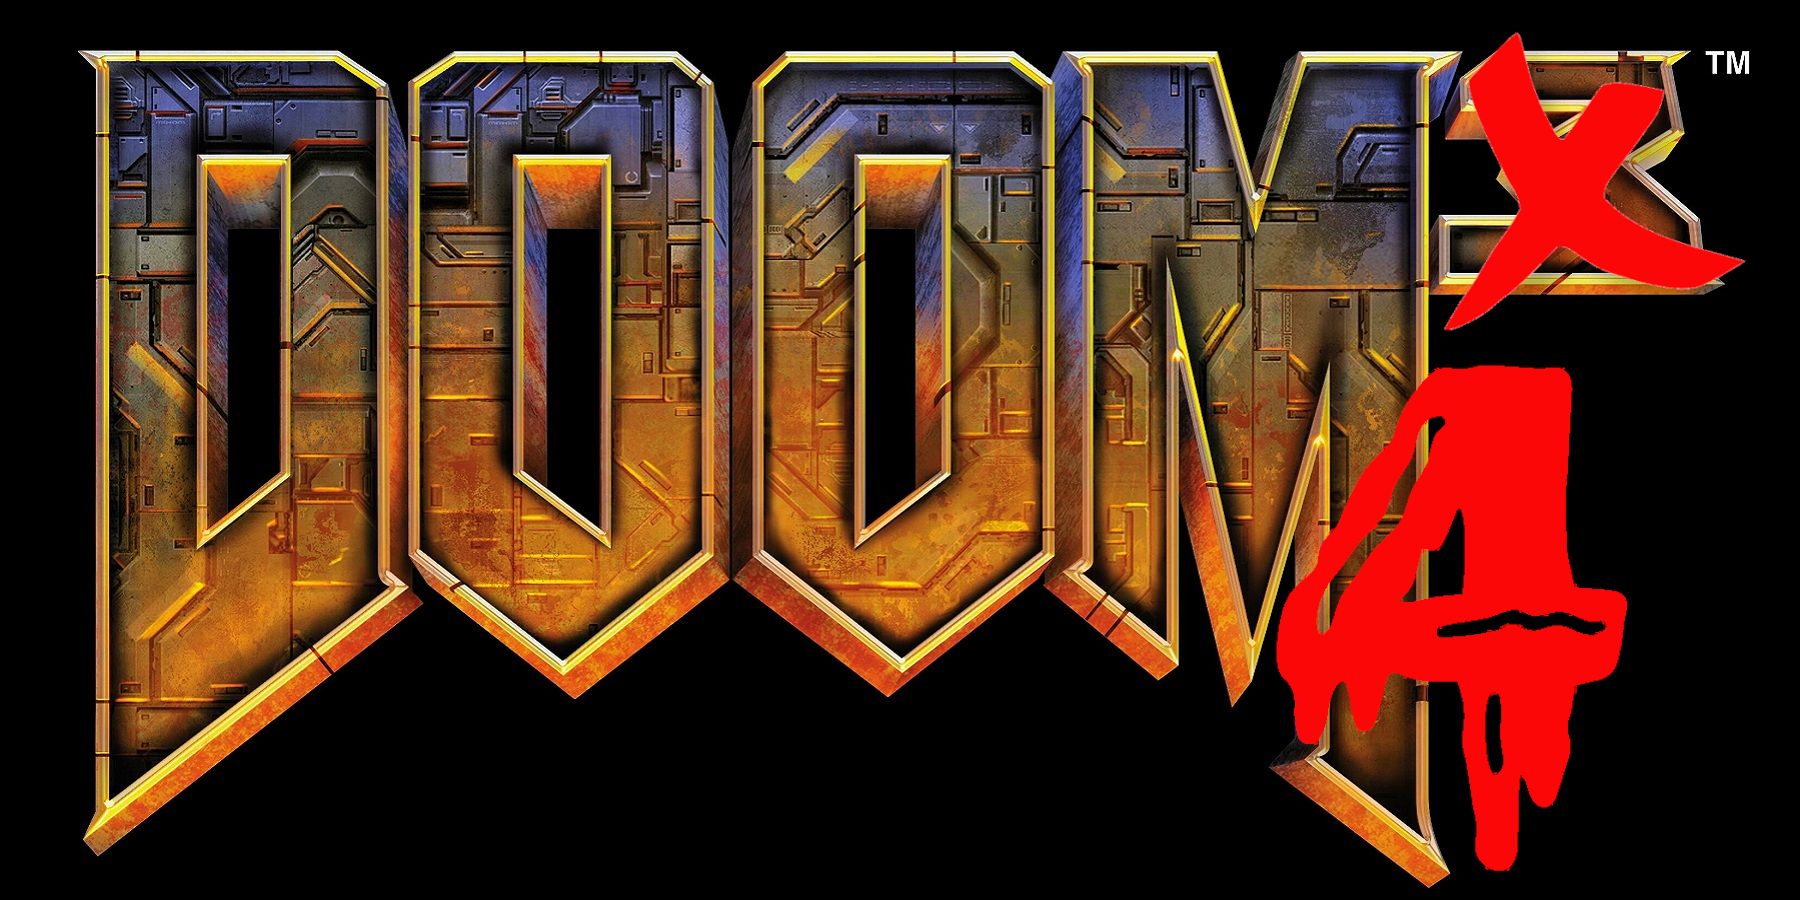 doom 4 release date ps3